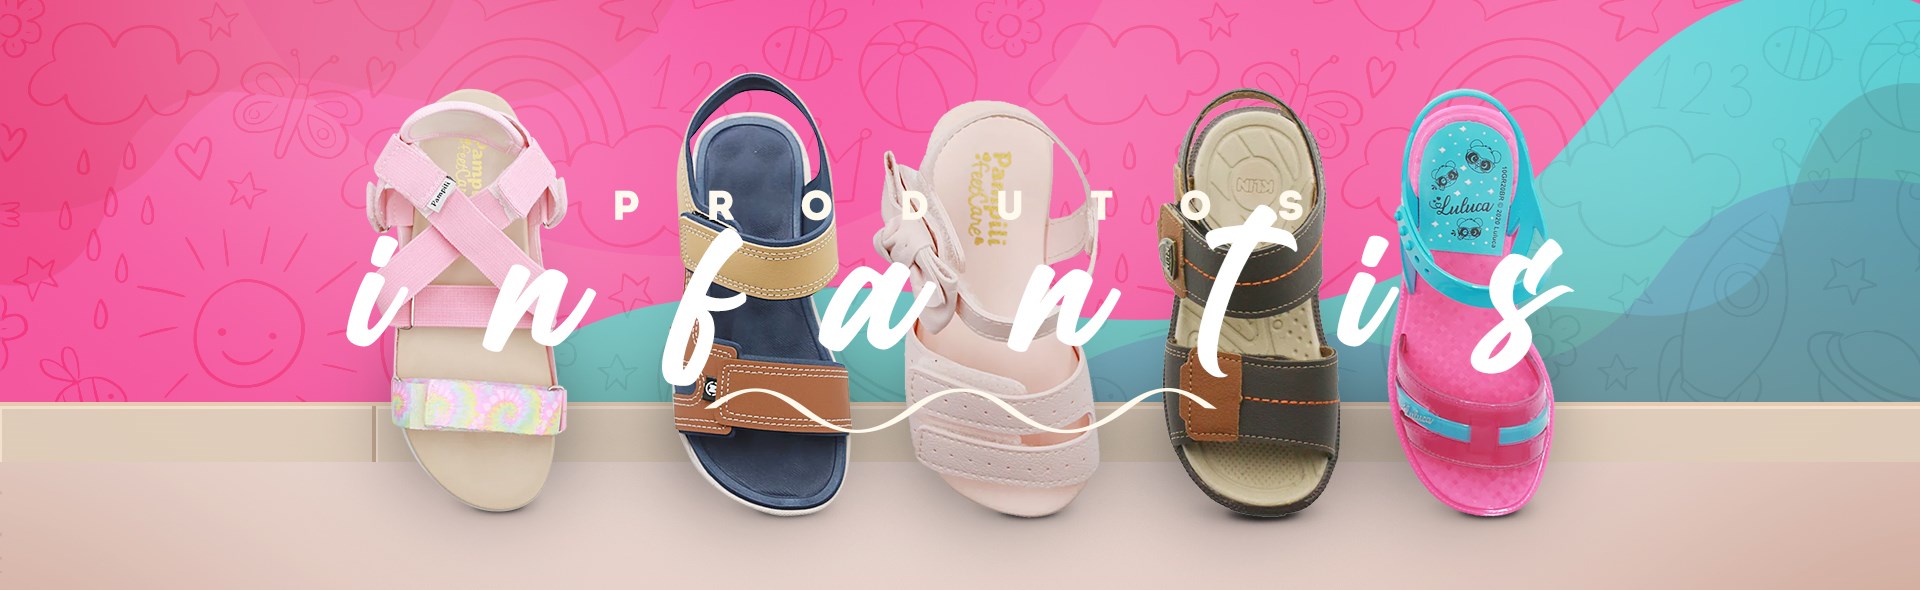 Anita Shoes - Calçados e Acessórios - Calçados Infantis - Calçados bebê, infantil, menino, menina. Diversas marcas, cores e modelos.